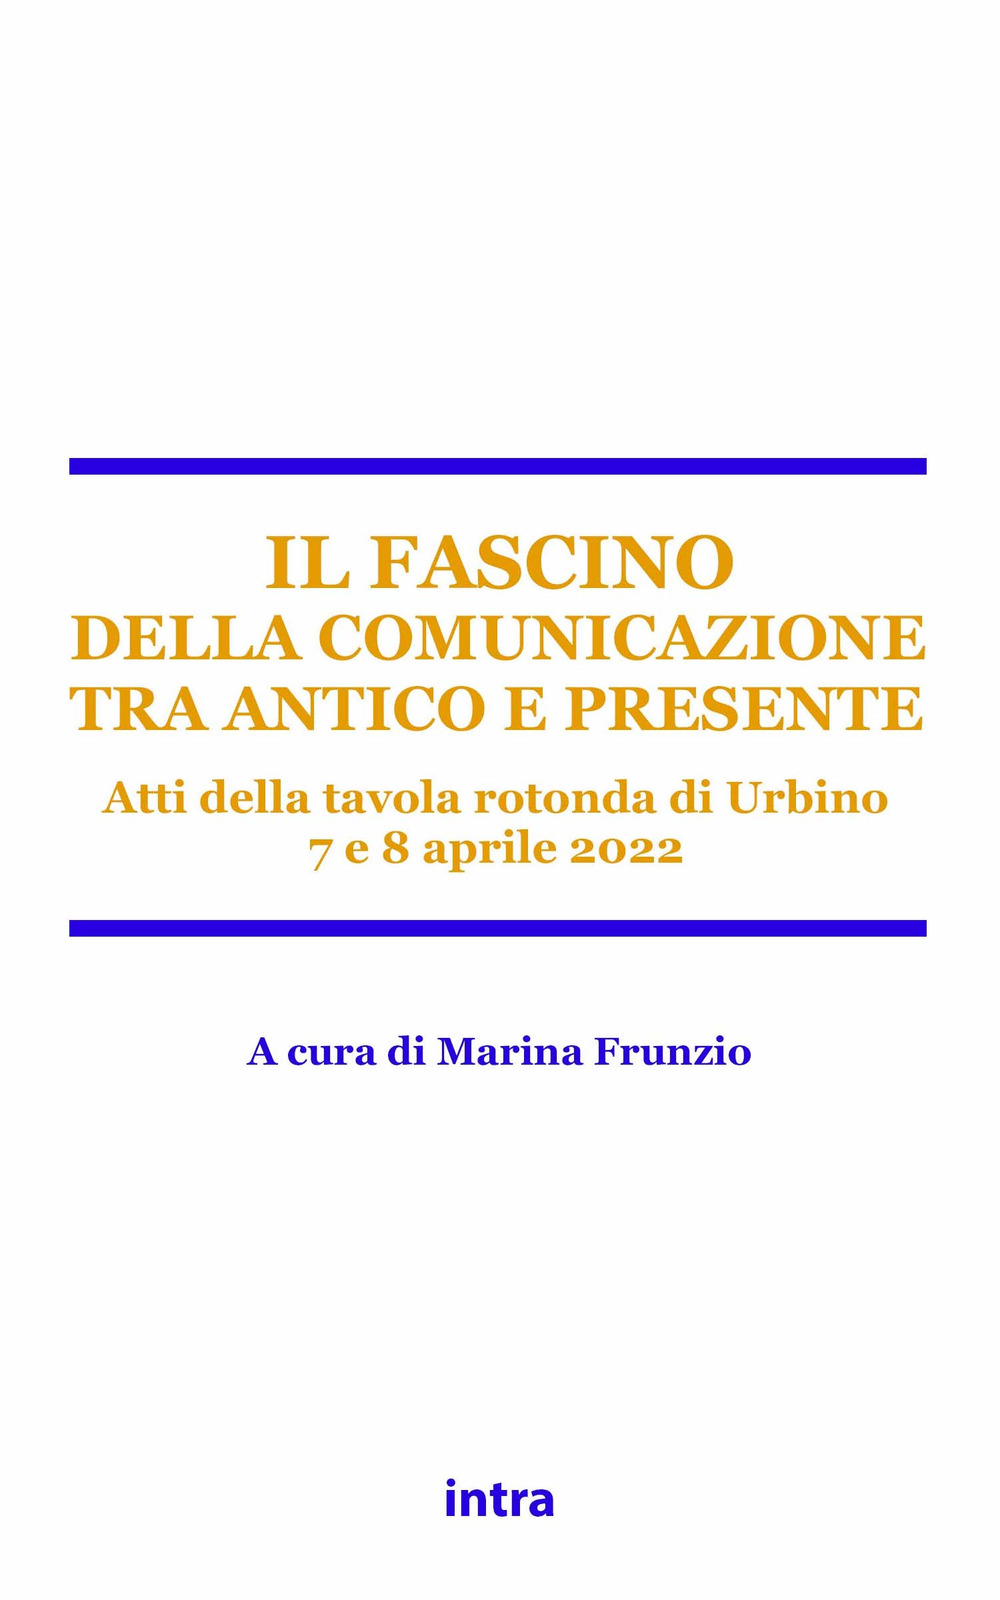 Il fascino della comunicazione tra antico e presente. Atti della tavola rotonda (Urbino, 7-8 aprile 2022)